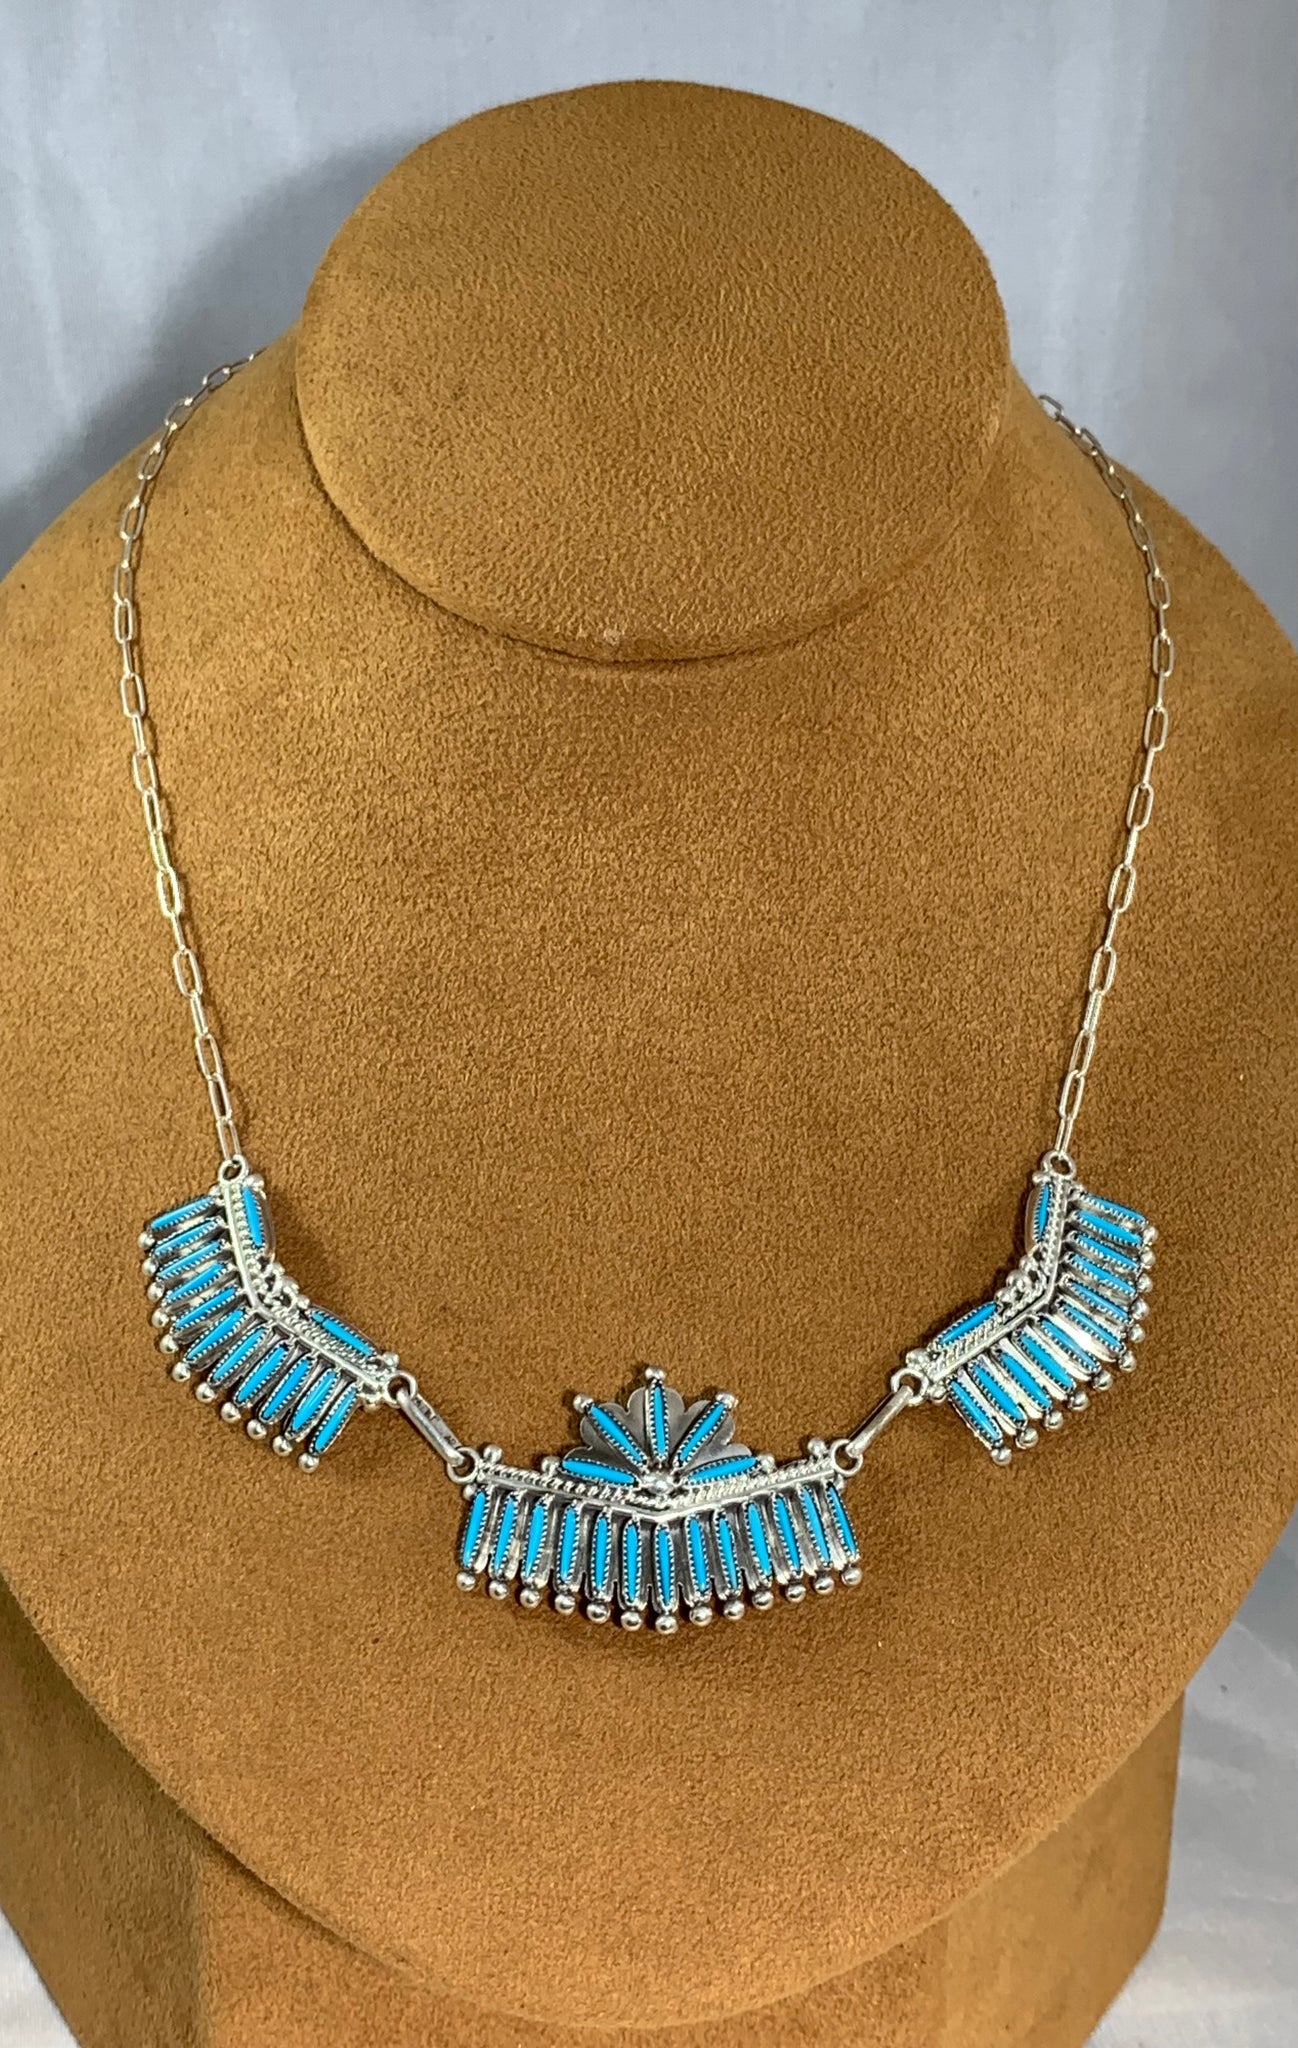 Zuni Needlepoint Necklace By S. Waatsa